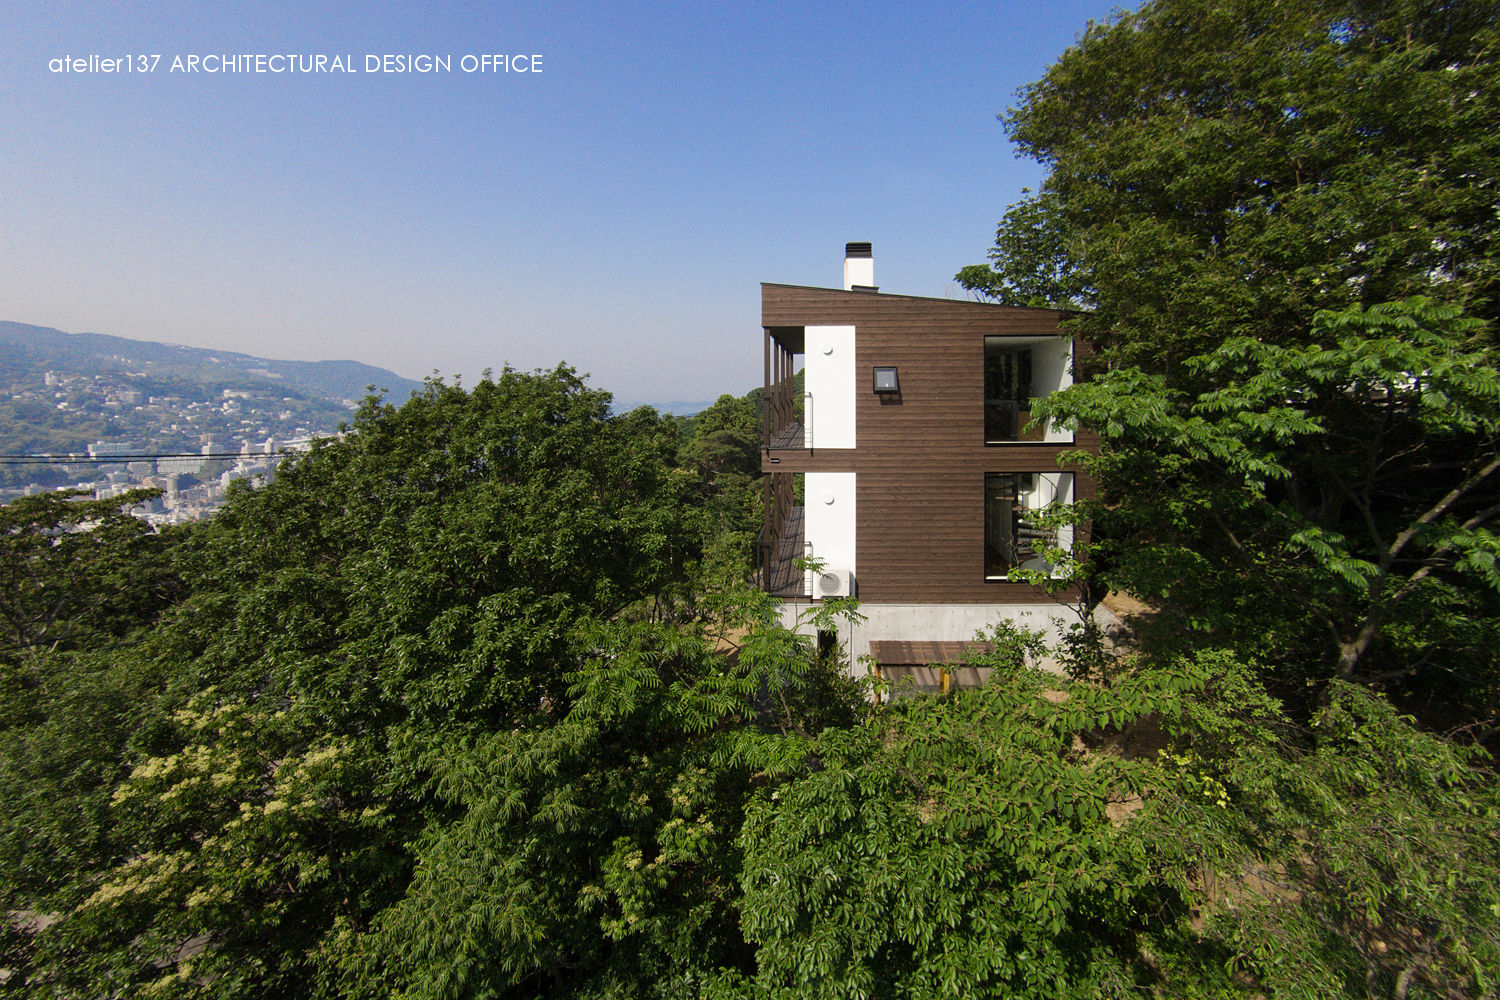 外観 atelier137 ARCHITECTURAL DESIGN OFFICE モダンな 家 木 木目調 傾斜地,眺望,海,3階建て,板張,外観